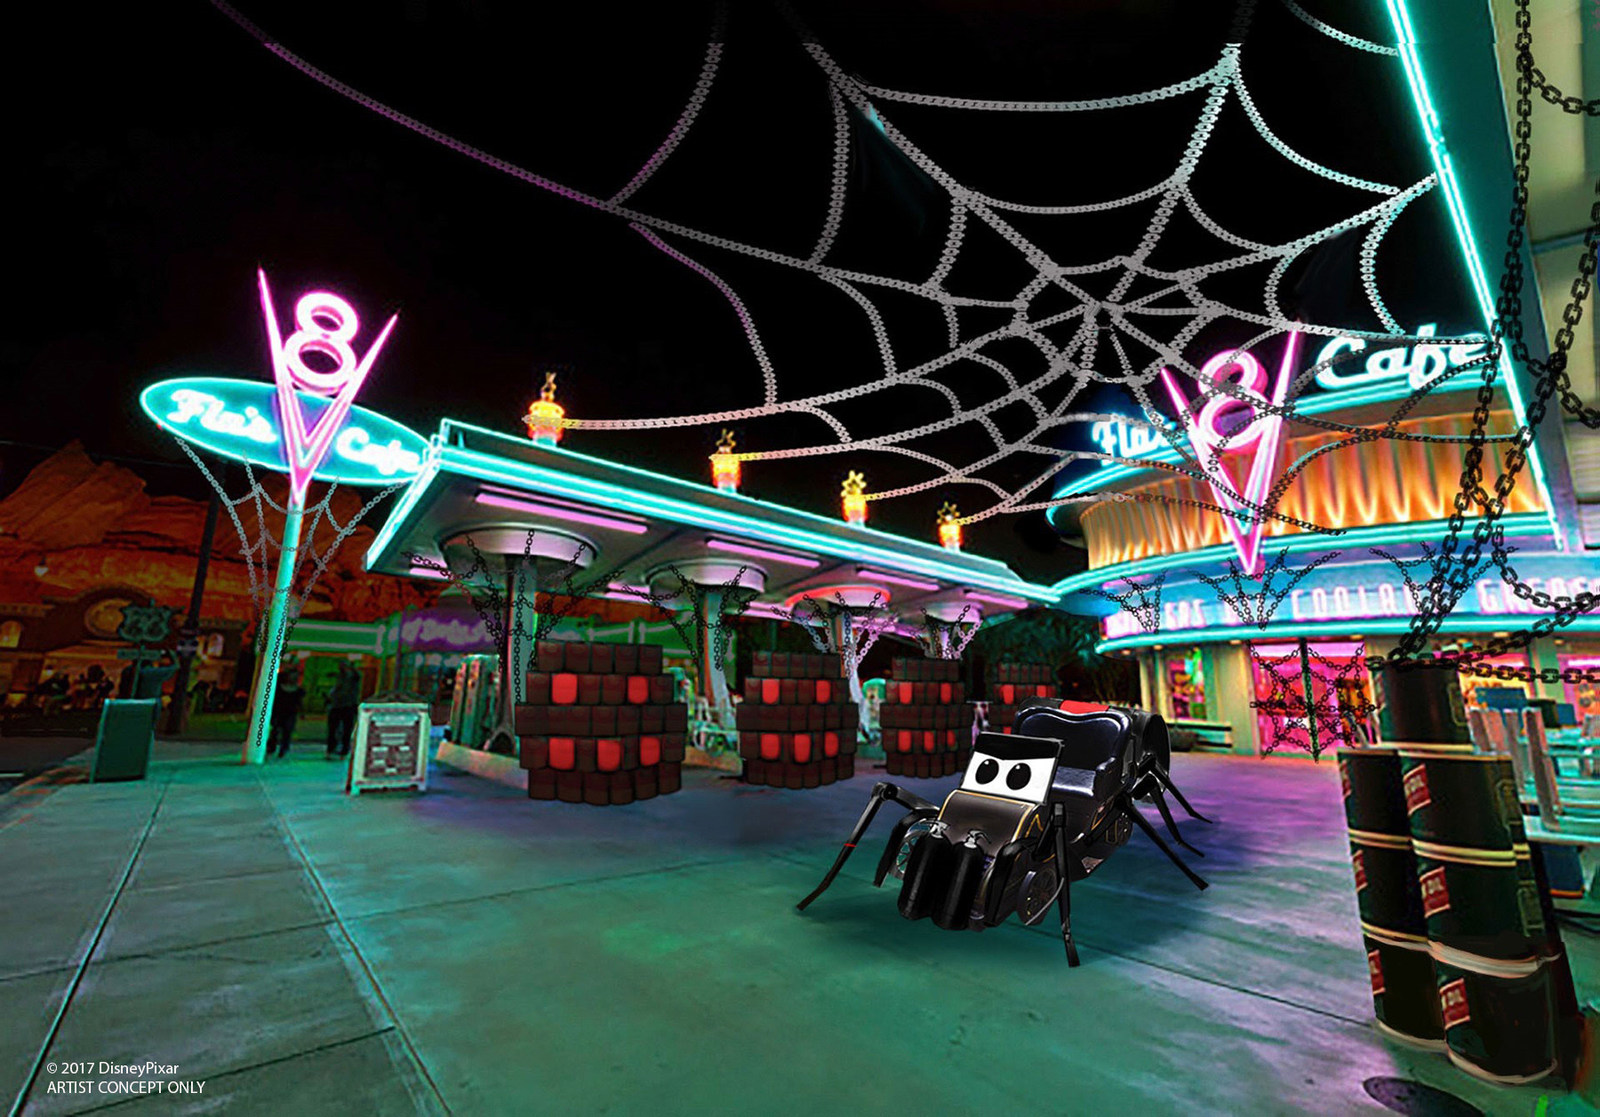 New Halloween Fun, Thrills and Villainous Décor Cast a Spell at Disney California Adventure Park, Sept. 15-Oct. 31